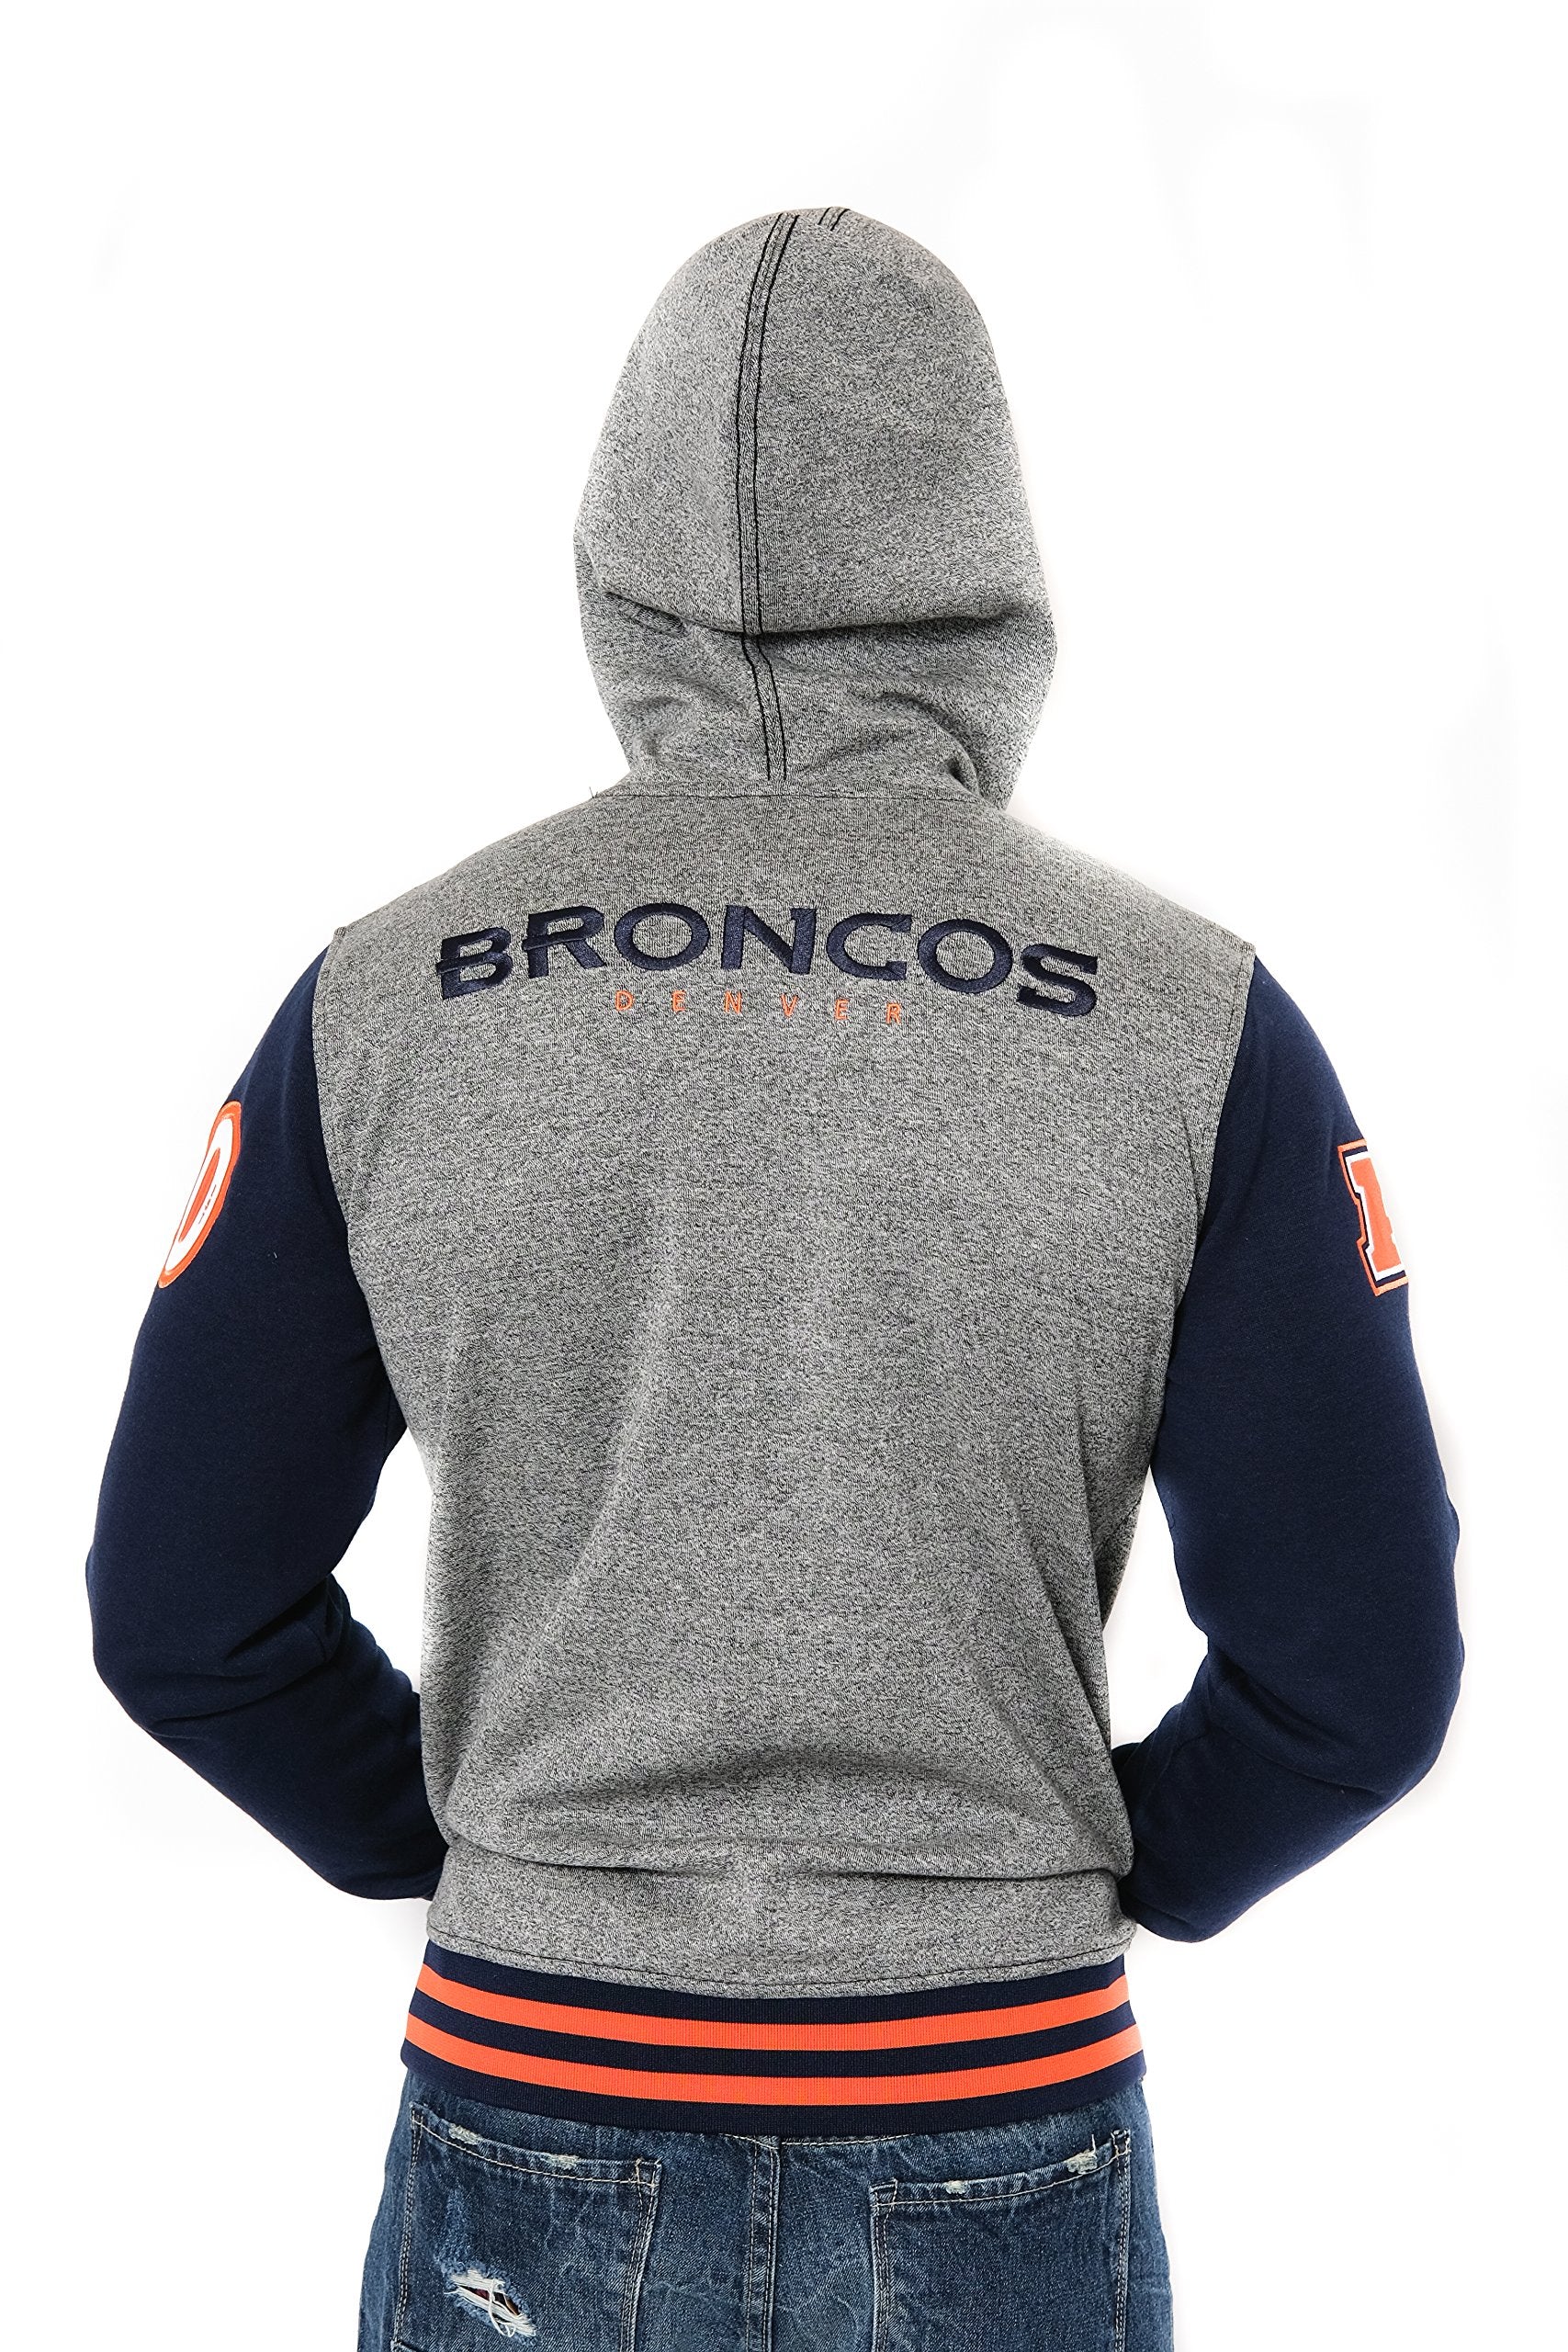 Ultra Game NFL Denver Broncos Mens Full Zip Soft Fleece Letterman Varsity Jacket Hoodie|Denver Broncos